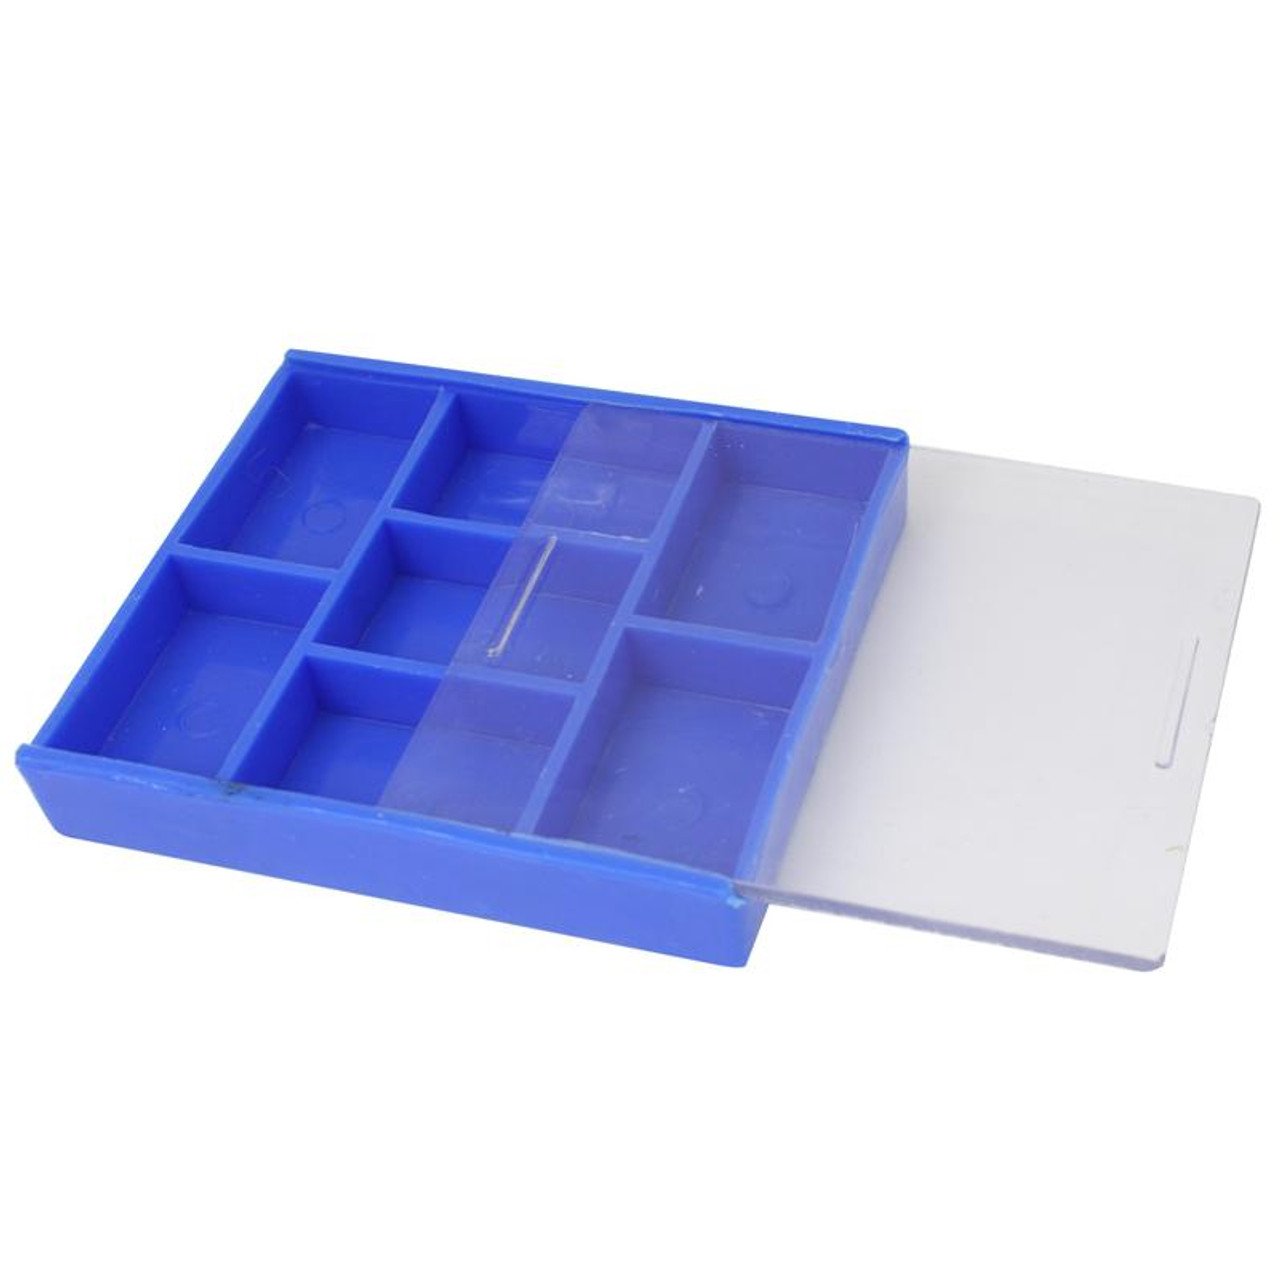 7 Compartment Plastic Storage Box